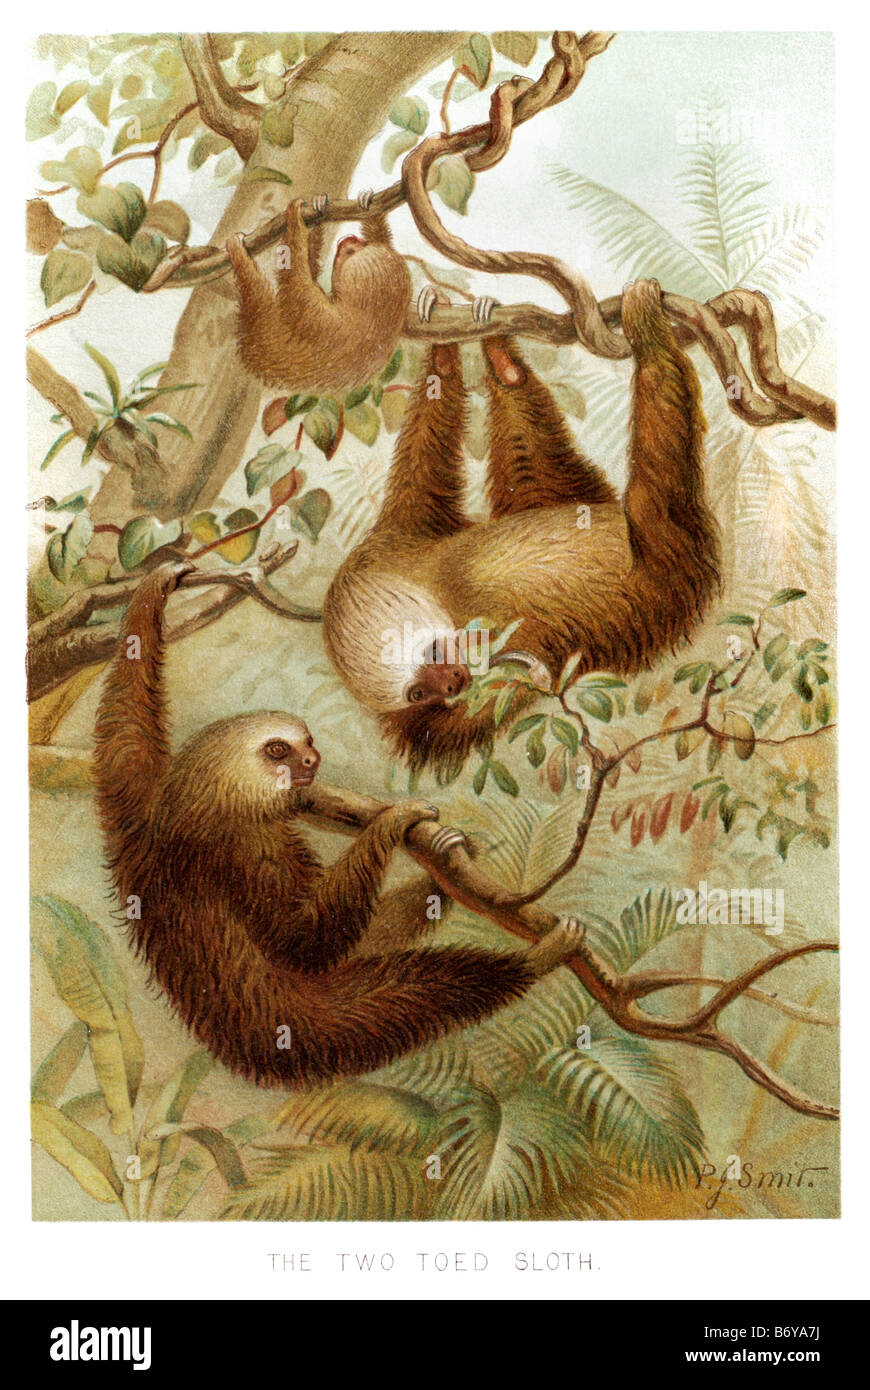 Dos vetado sloth el salón perezosos comprenden seis especies de mamíferos medianos que viven en América Central y América del Sur pertenecientes t Foto de stock